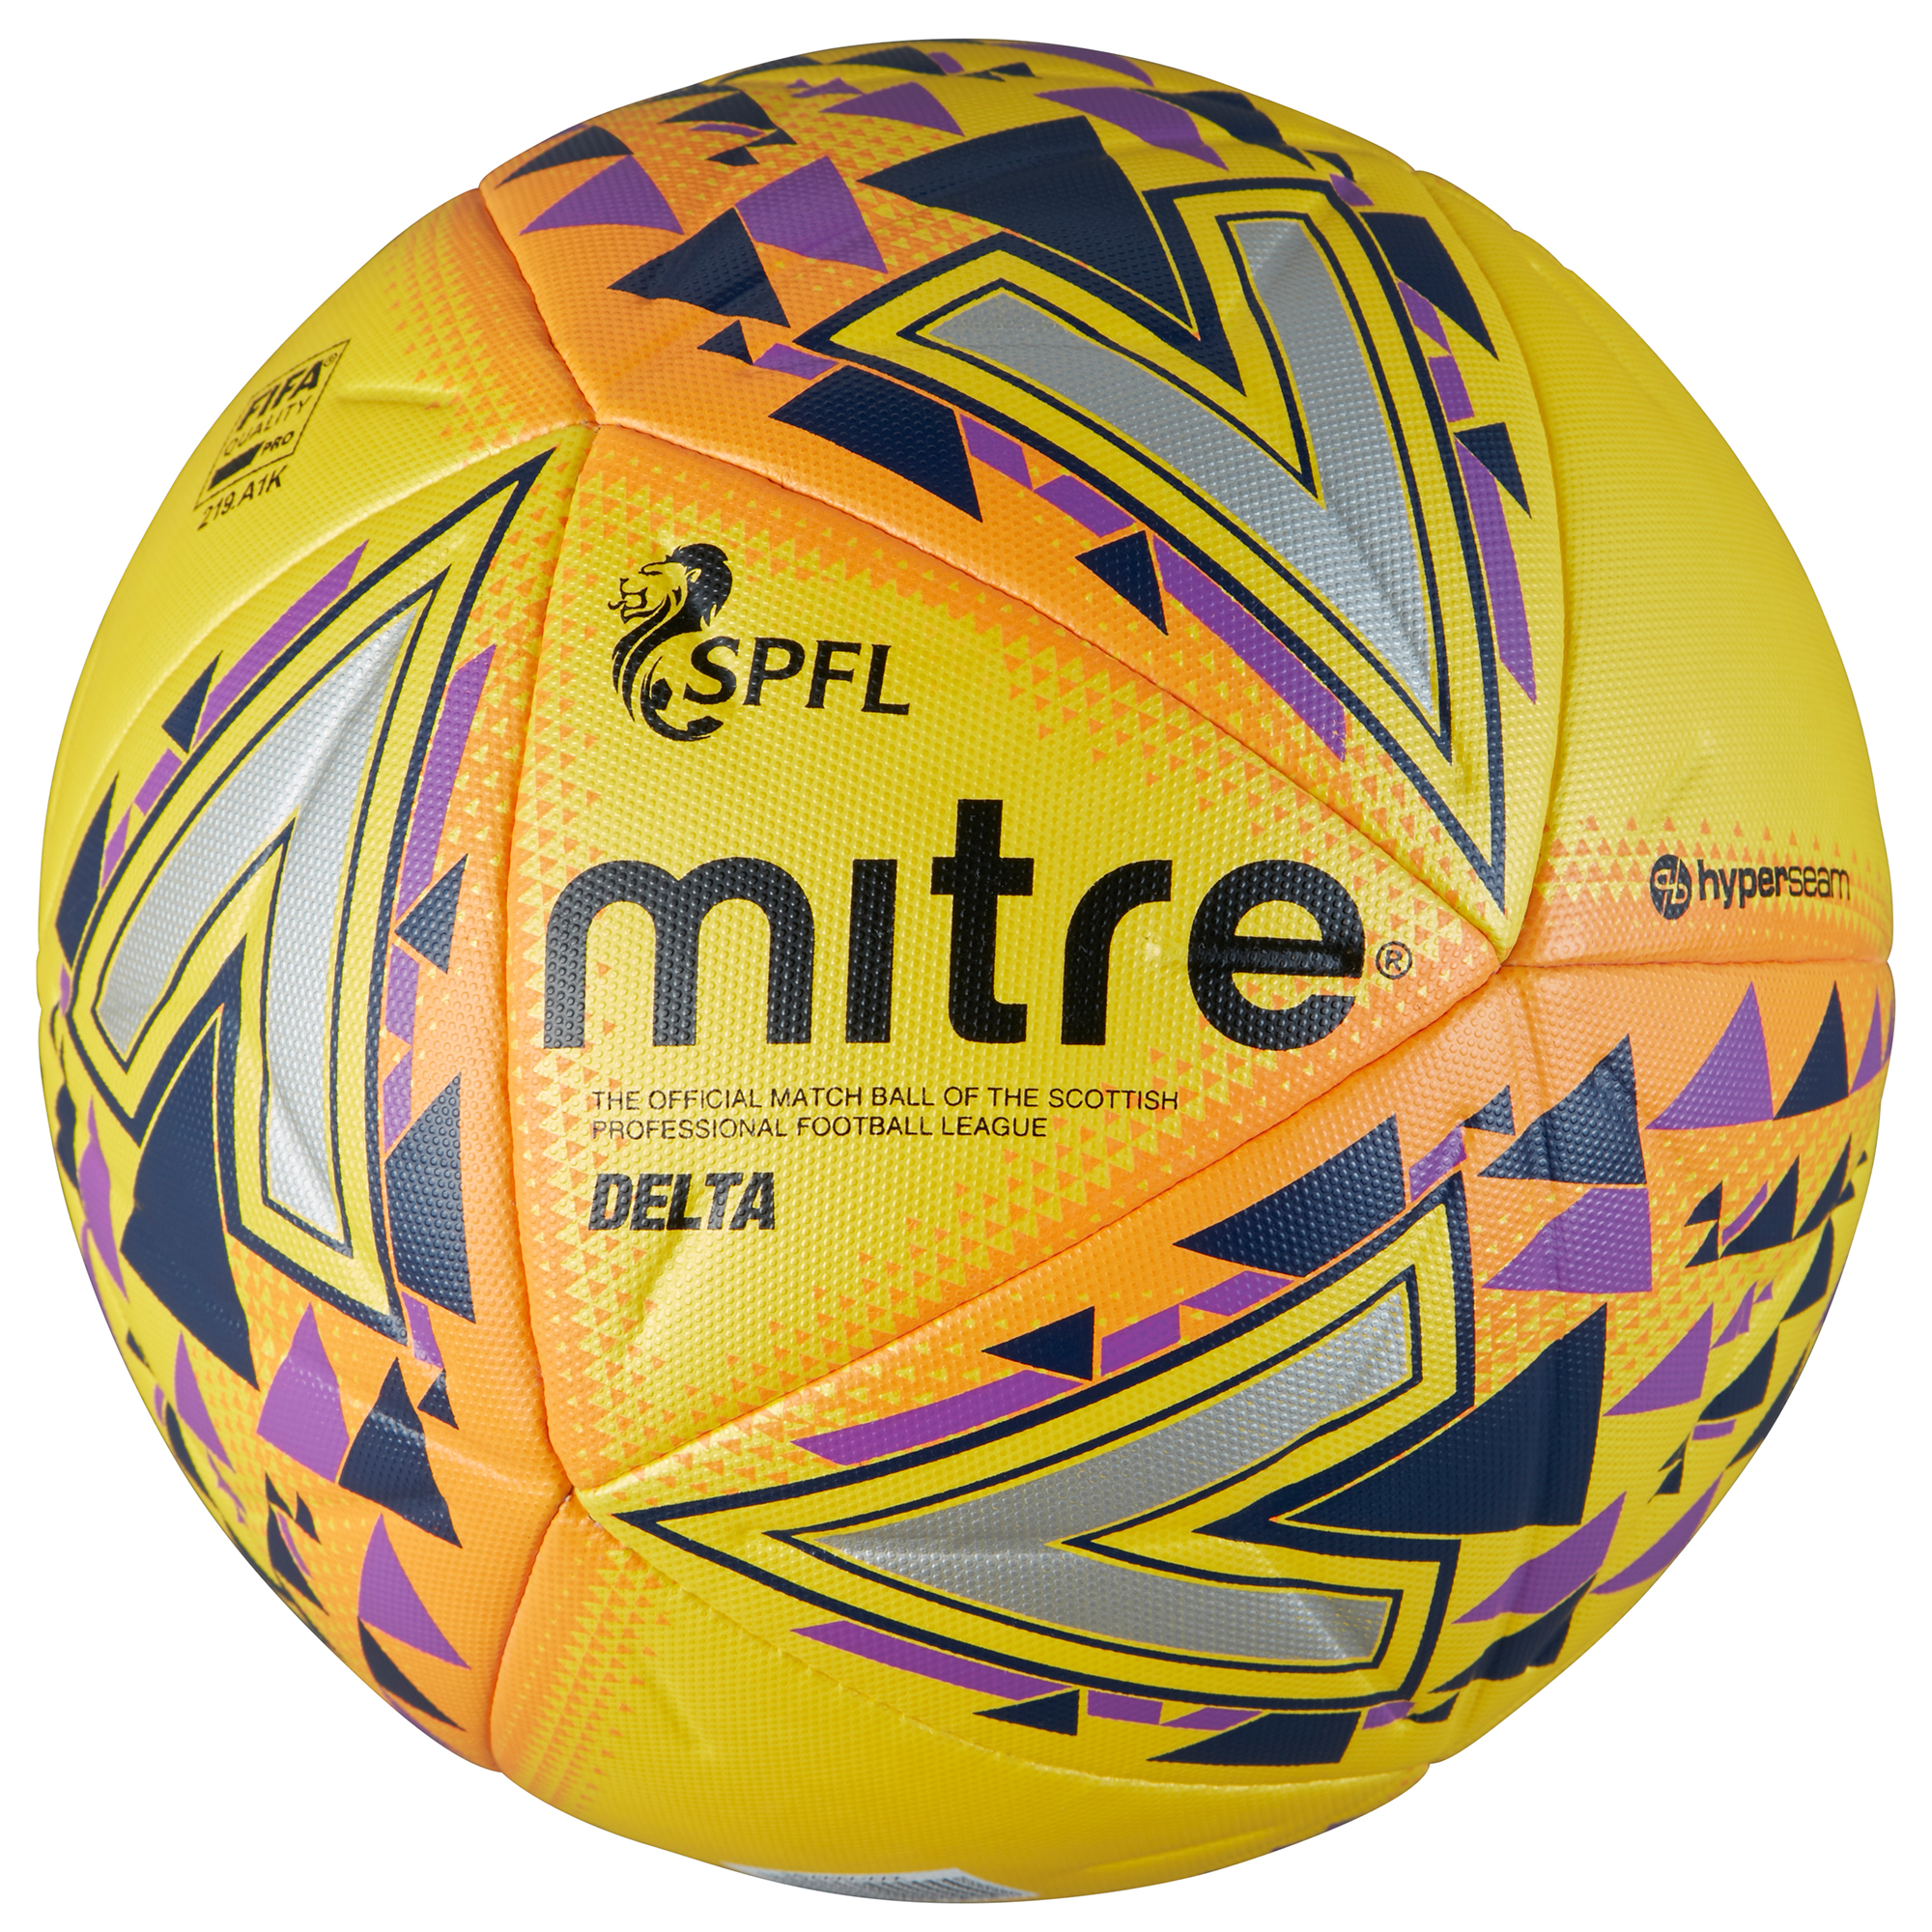 mitre official match ball